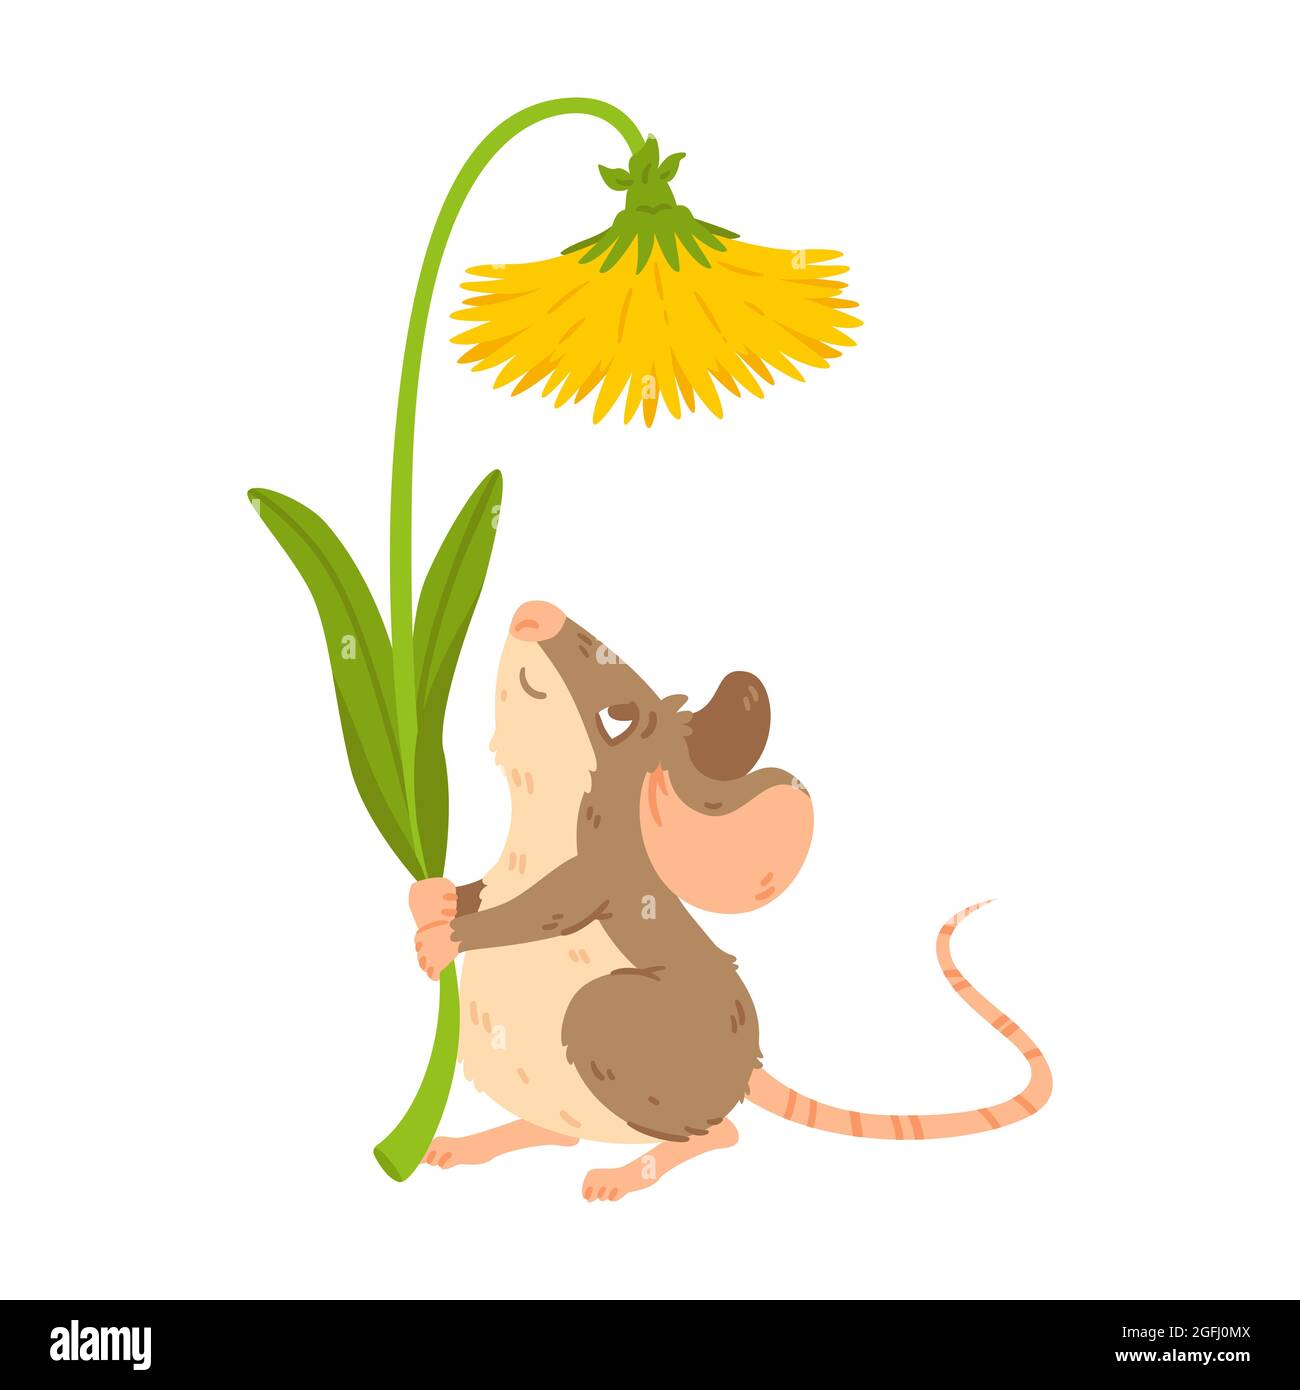 Piccolo bosco mouse tenere dente di leone. Vole prato con fiore. Fiore di mantenimento del ratto. Illustrazione isolata del carattere vettoriale su sfondo bianco. Illustrazione Vettoriale